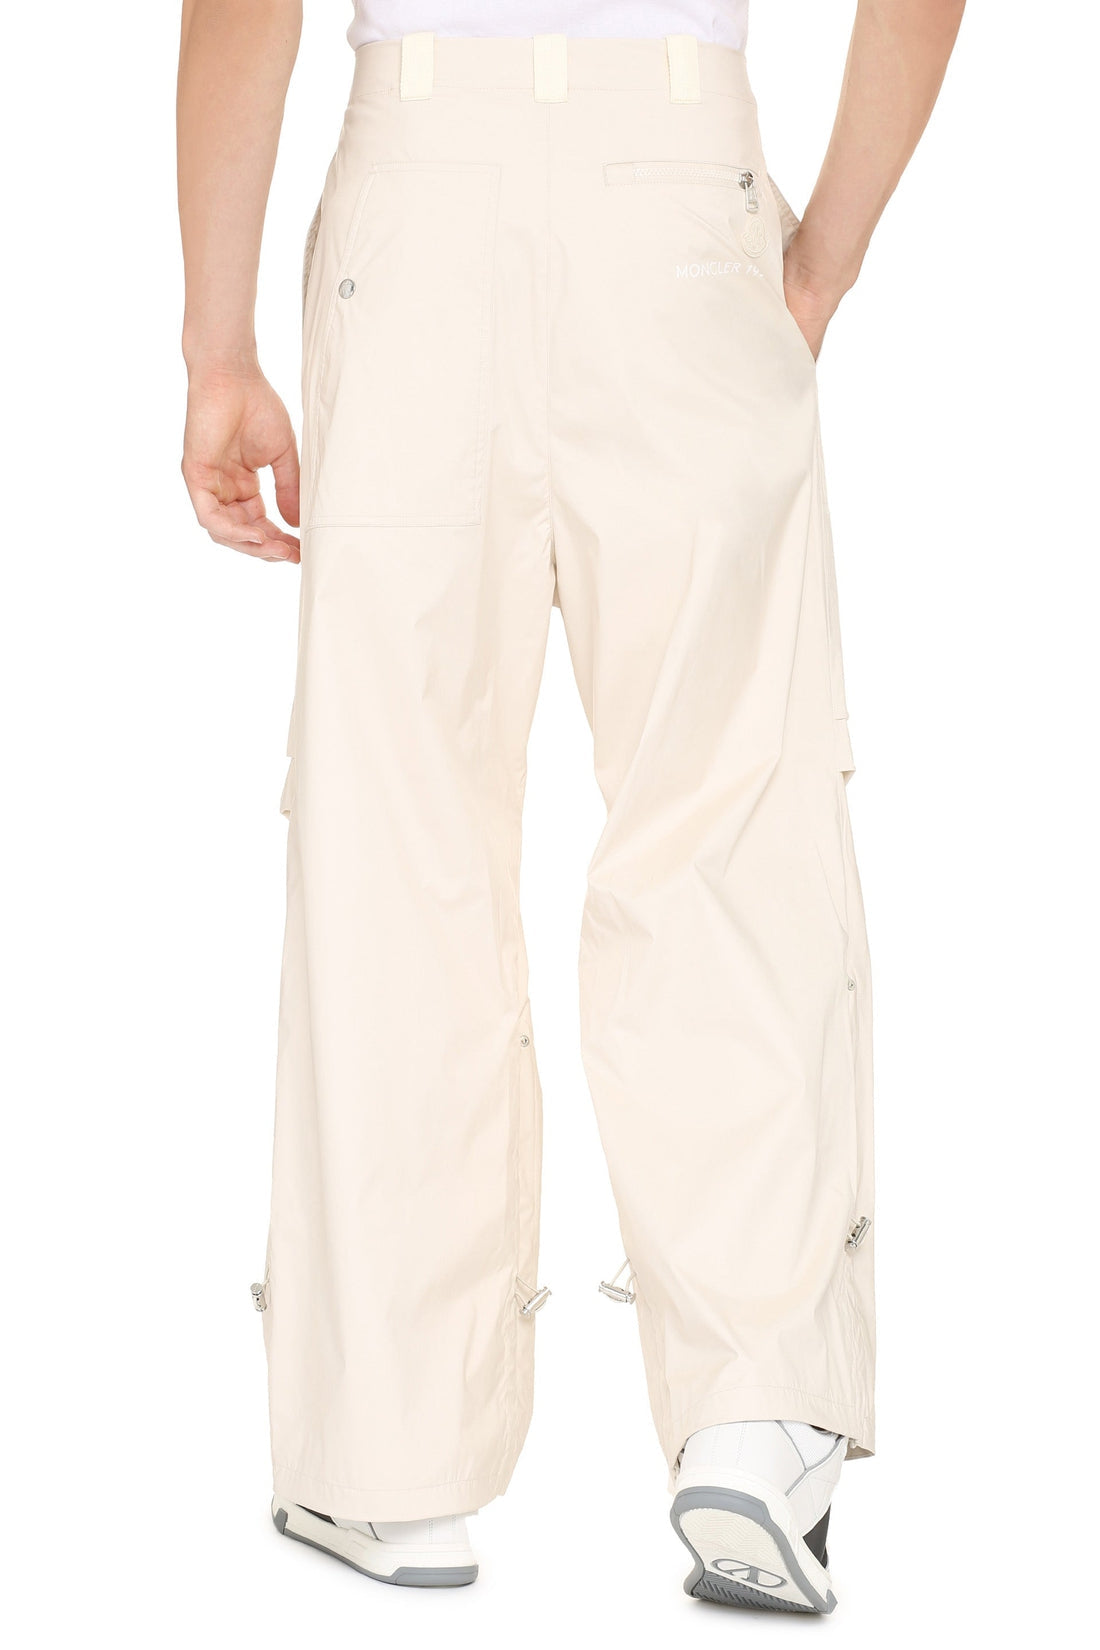 Moncler Genius-OUTLET-SALE-2 Moncler 1952 - Technical fabric pants-ARCHIVIST